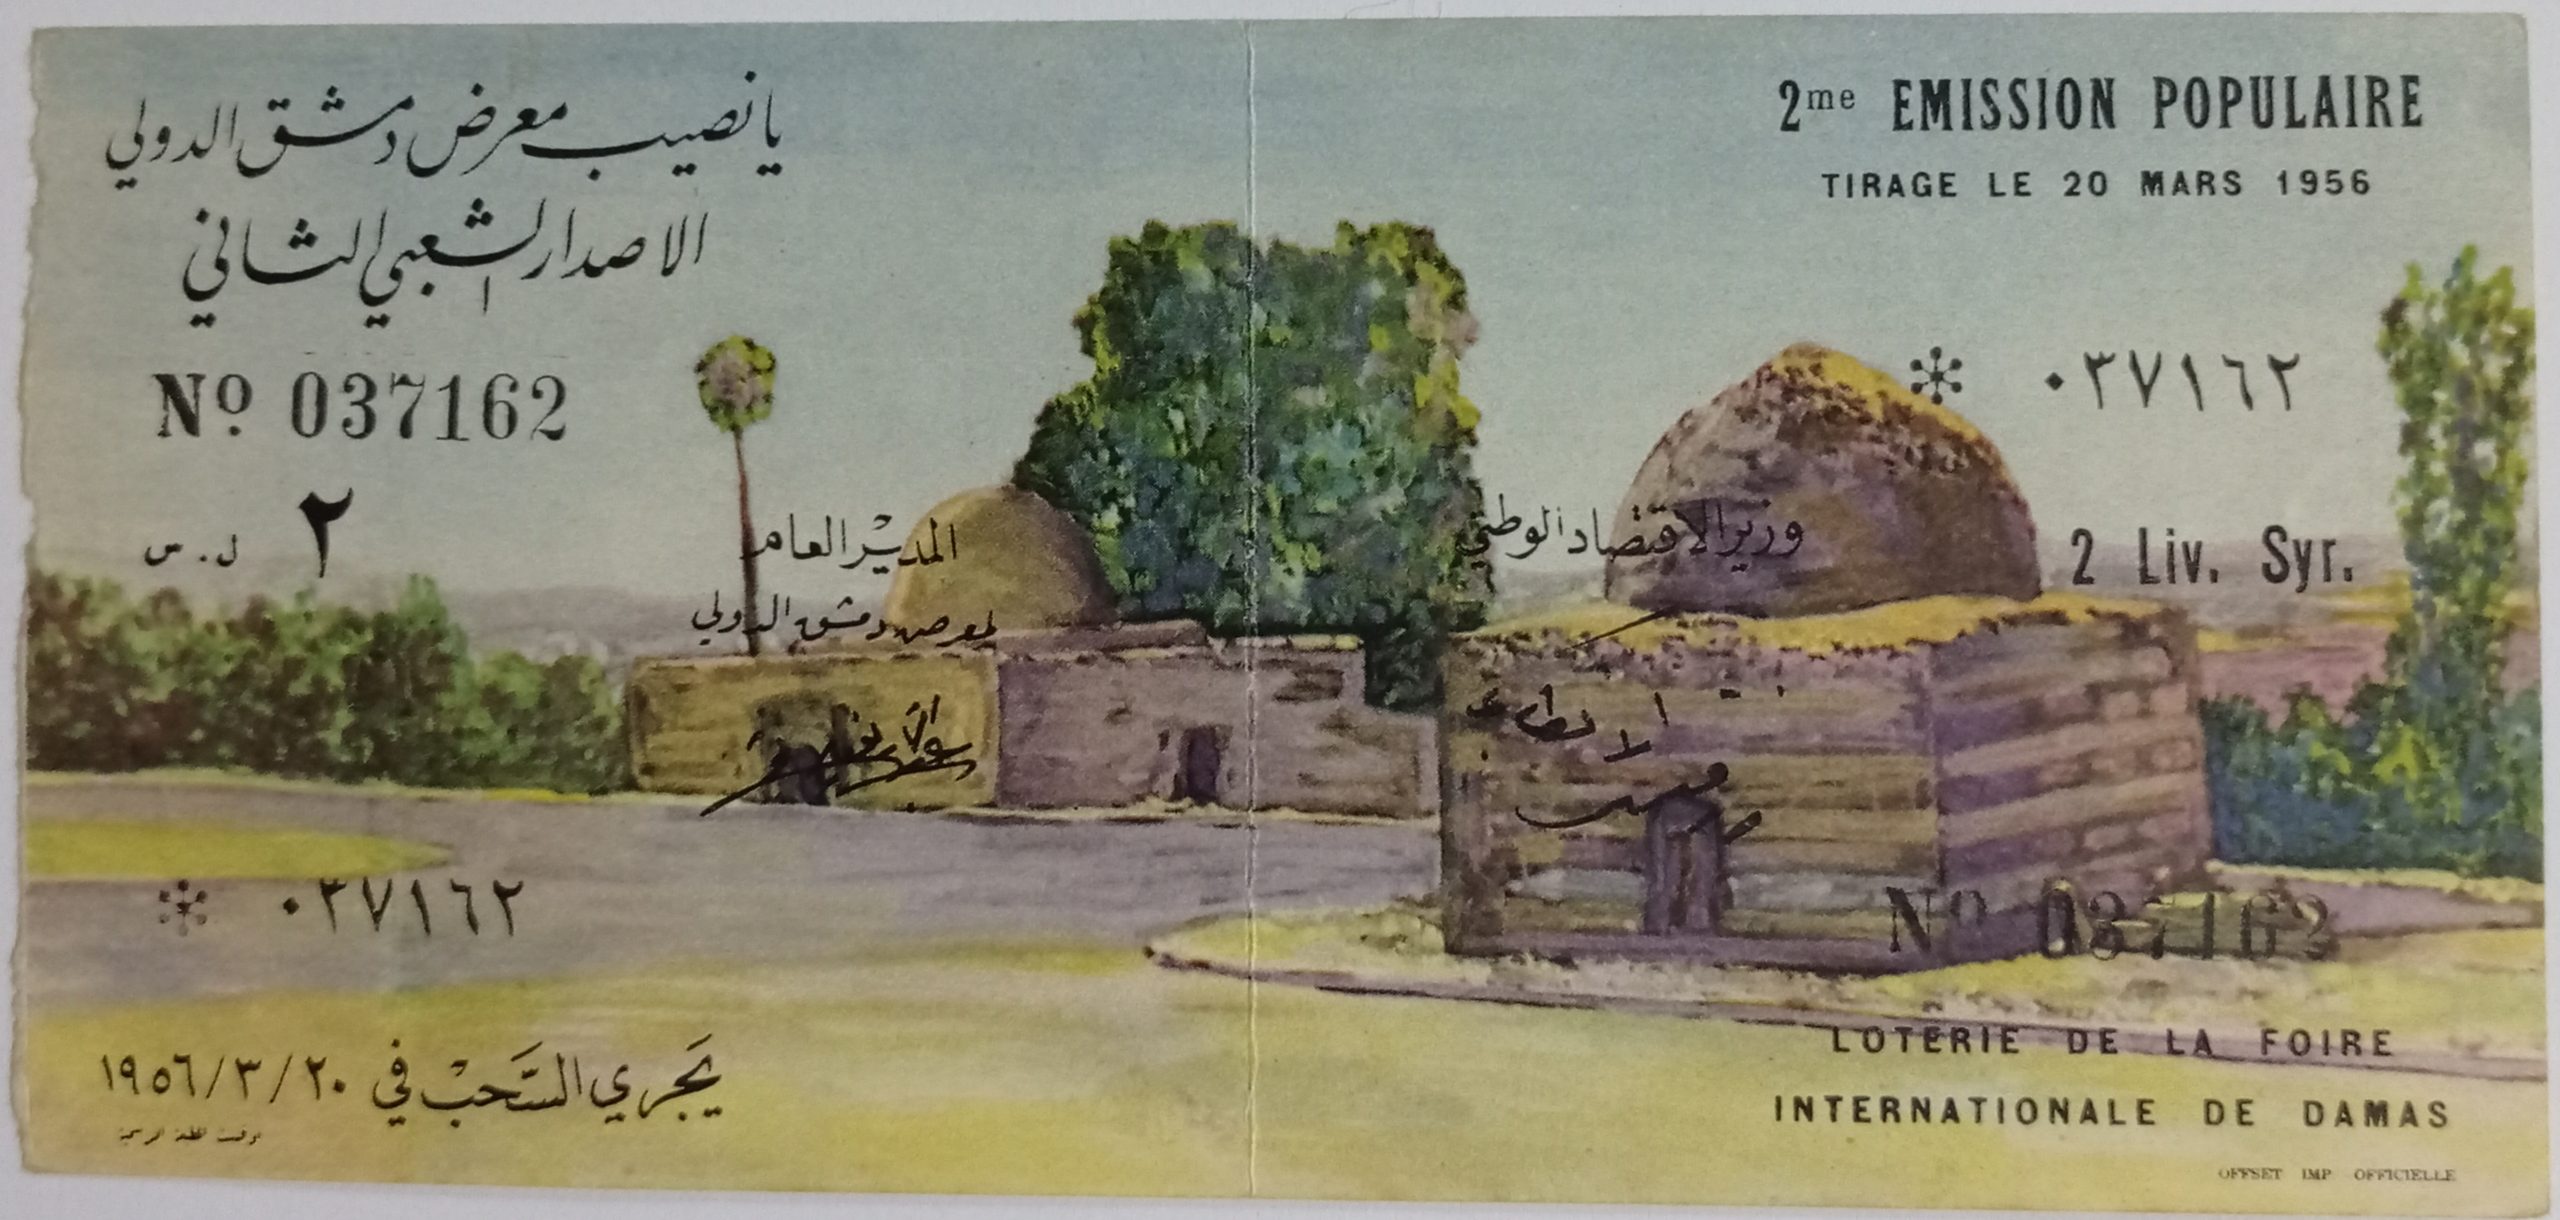 التاريخ السوري المعاصر - يانصيب معرض دمشق الدولي - الإصدار الشعبي الثاني عام 1956